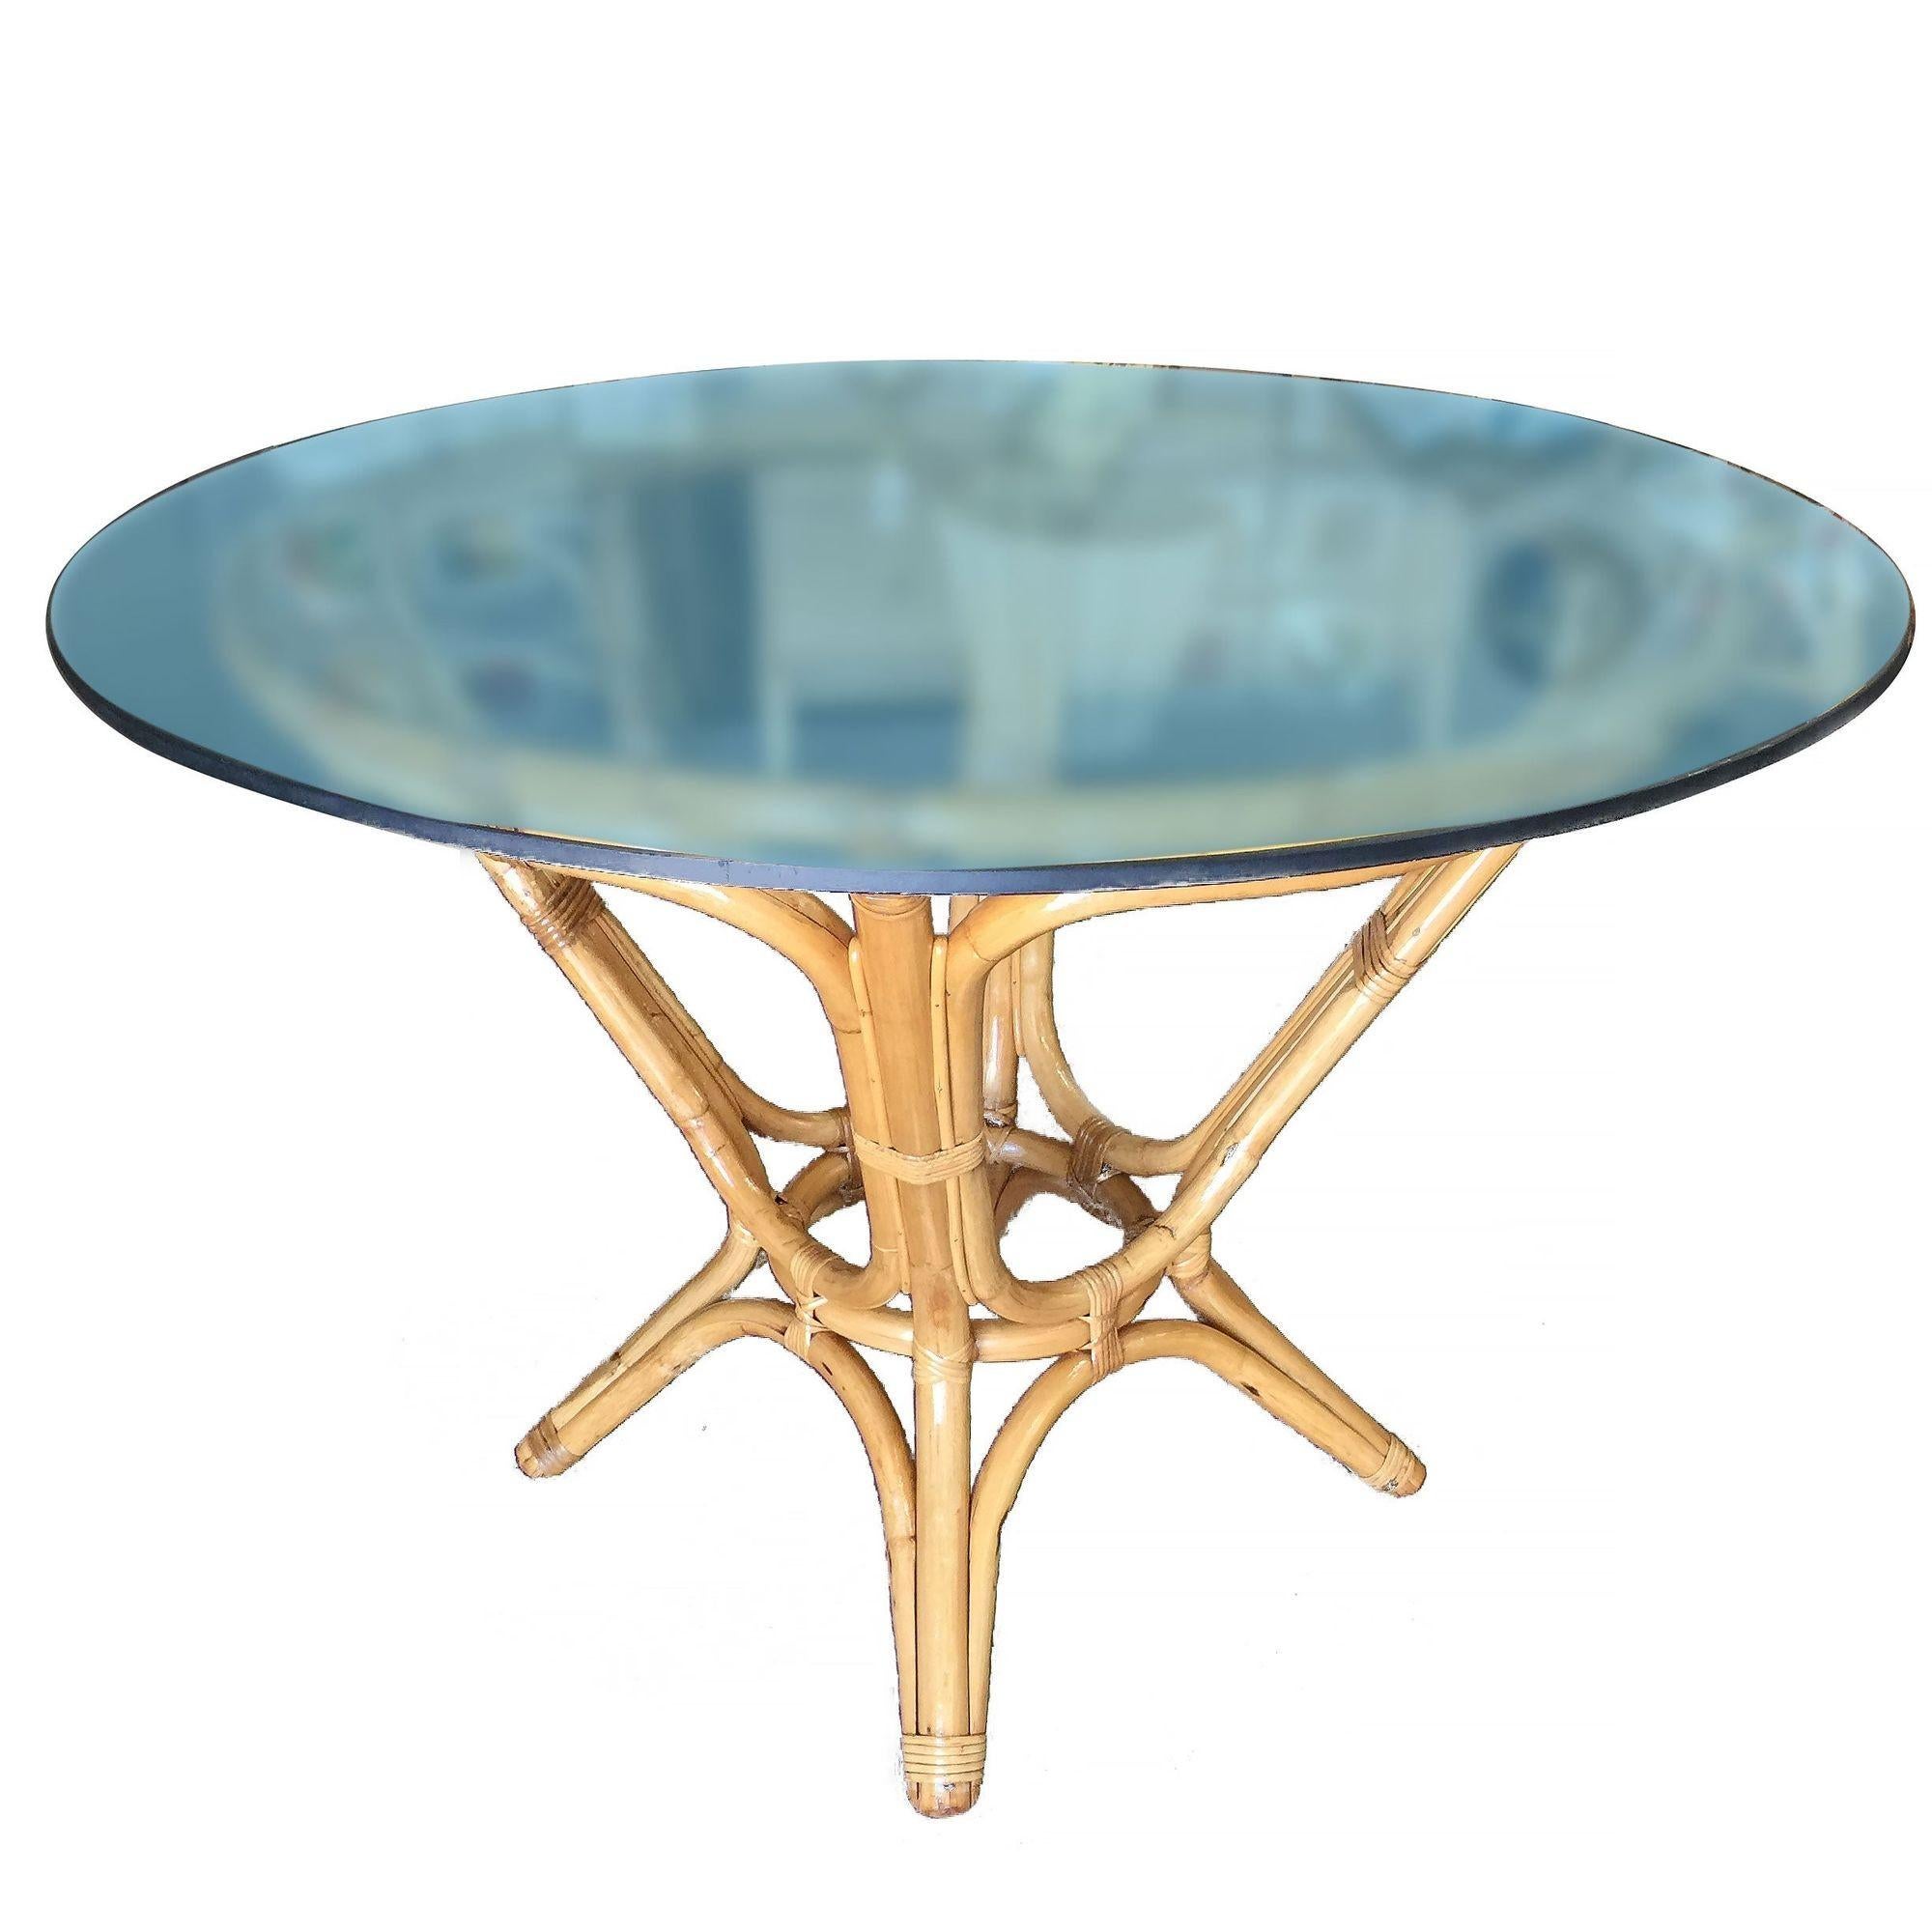 L'élégante table de salle à manger du milieu du siècle présente une base sculpturale en rotin en forme de sablier et un plateau rond en verre. La table peut facilement accueillir quatre convives en fonction du choix des chaises. Remis à neuf pour